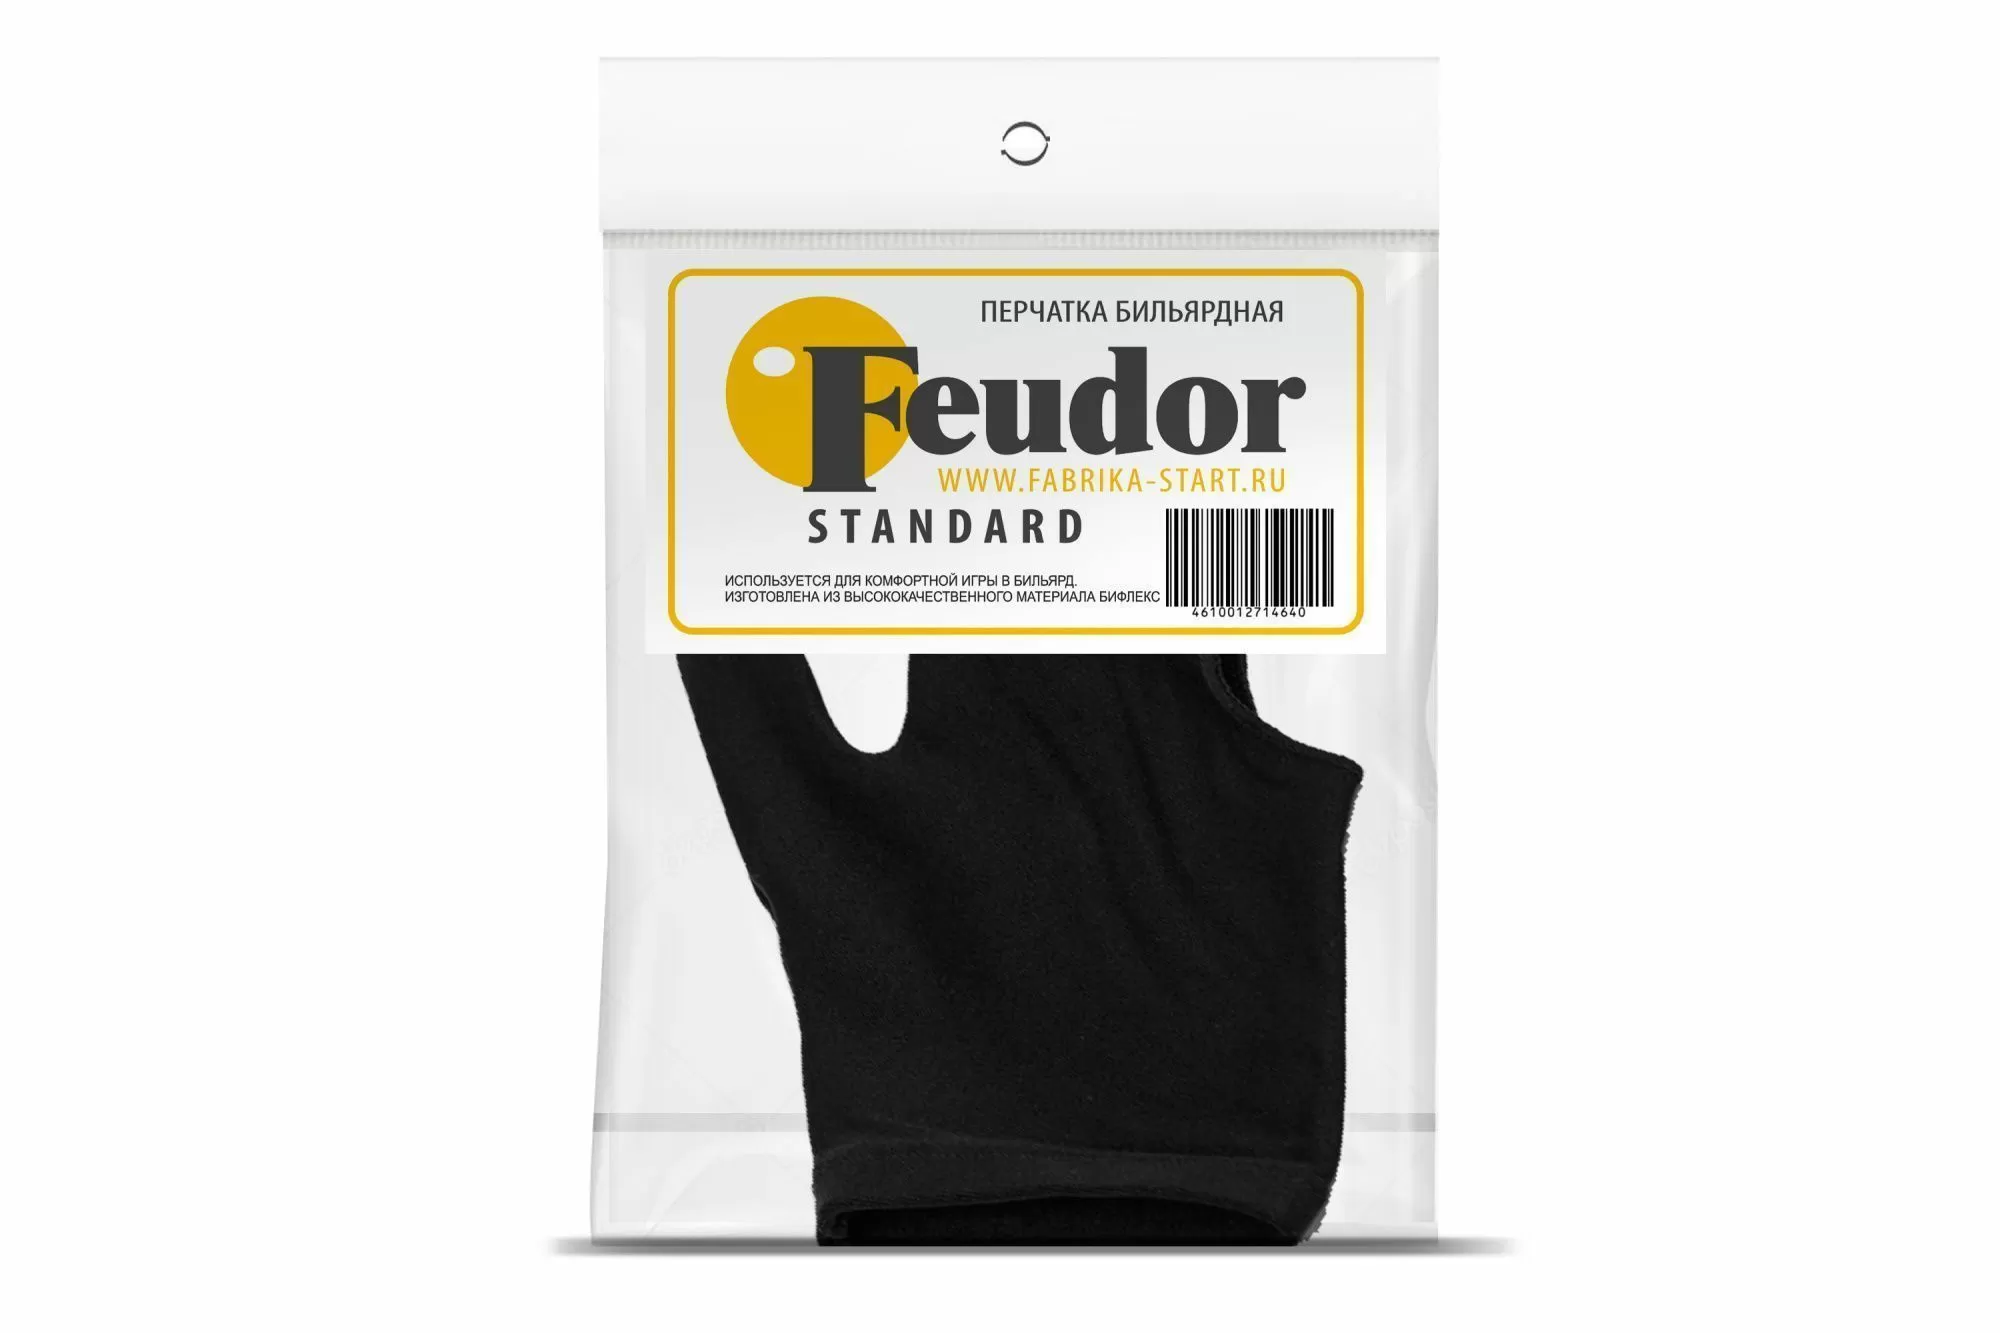 Перчатка-бильярдная Feudor Standard black M/L